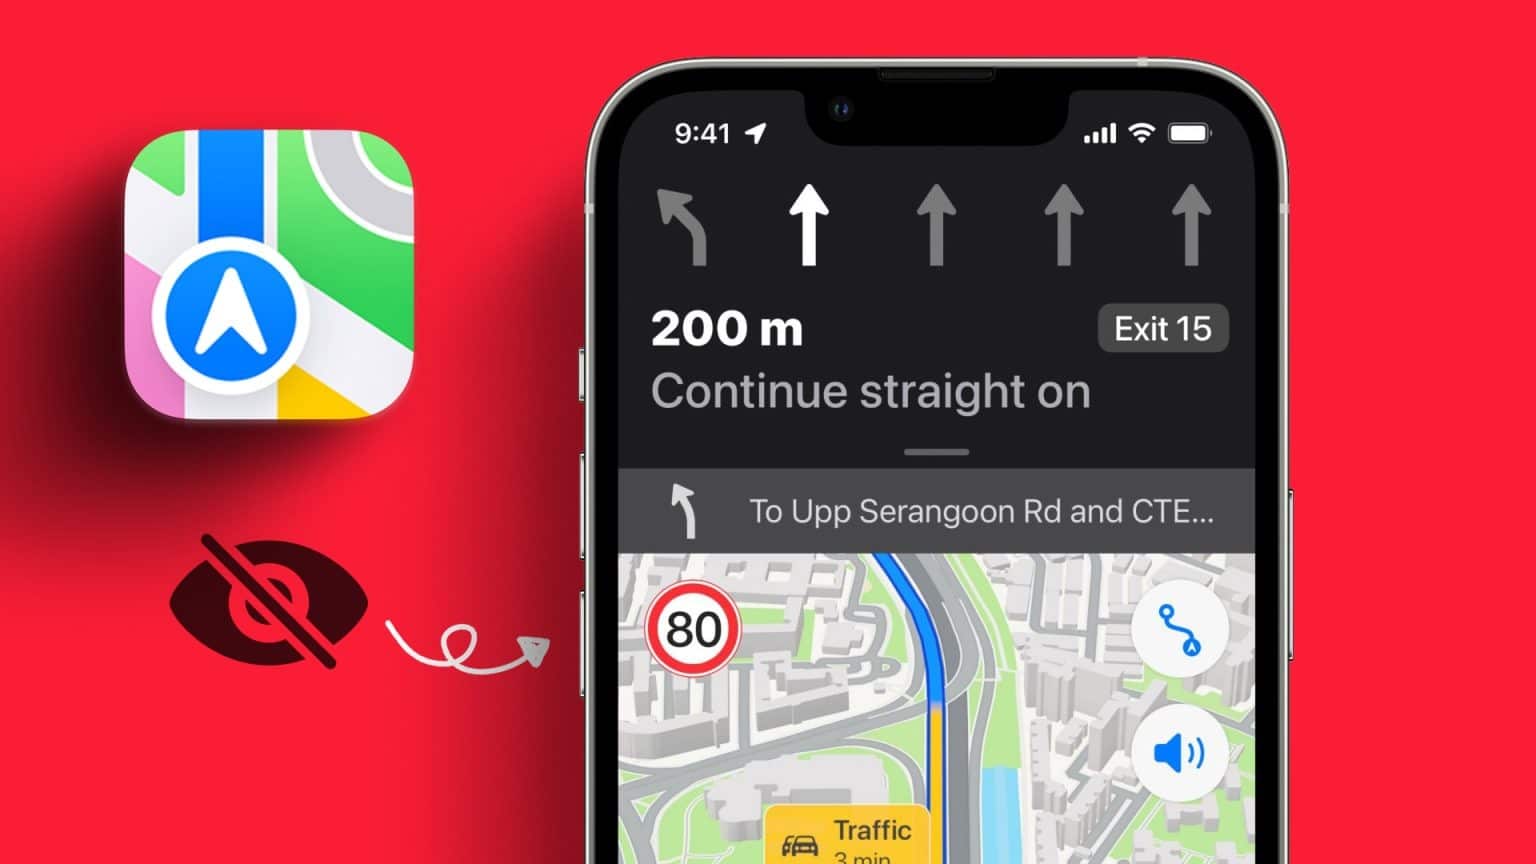 أفضل 6 إصلاحات لعدم عمل حد السرعة Speed Limit في Apple Maps على iPhone - %categories